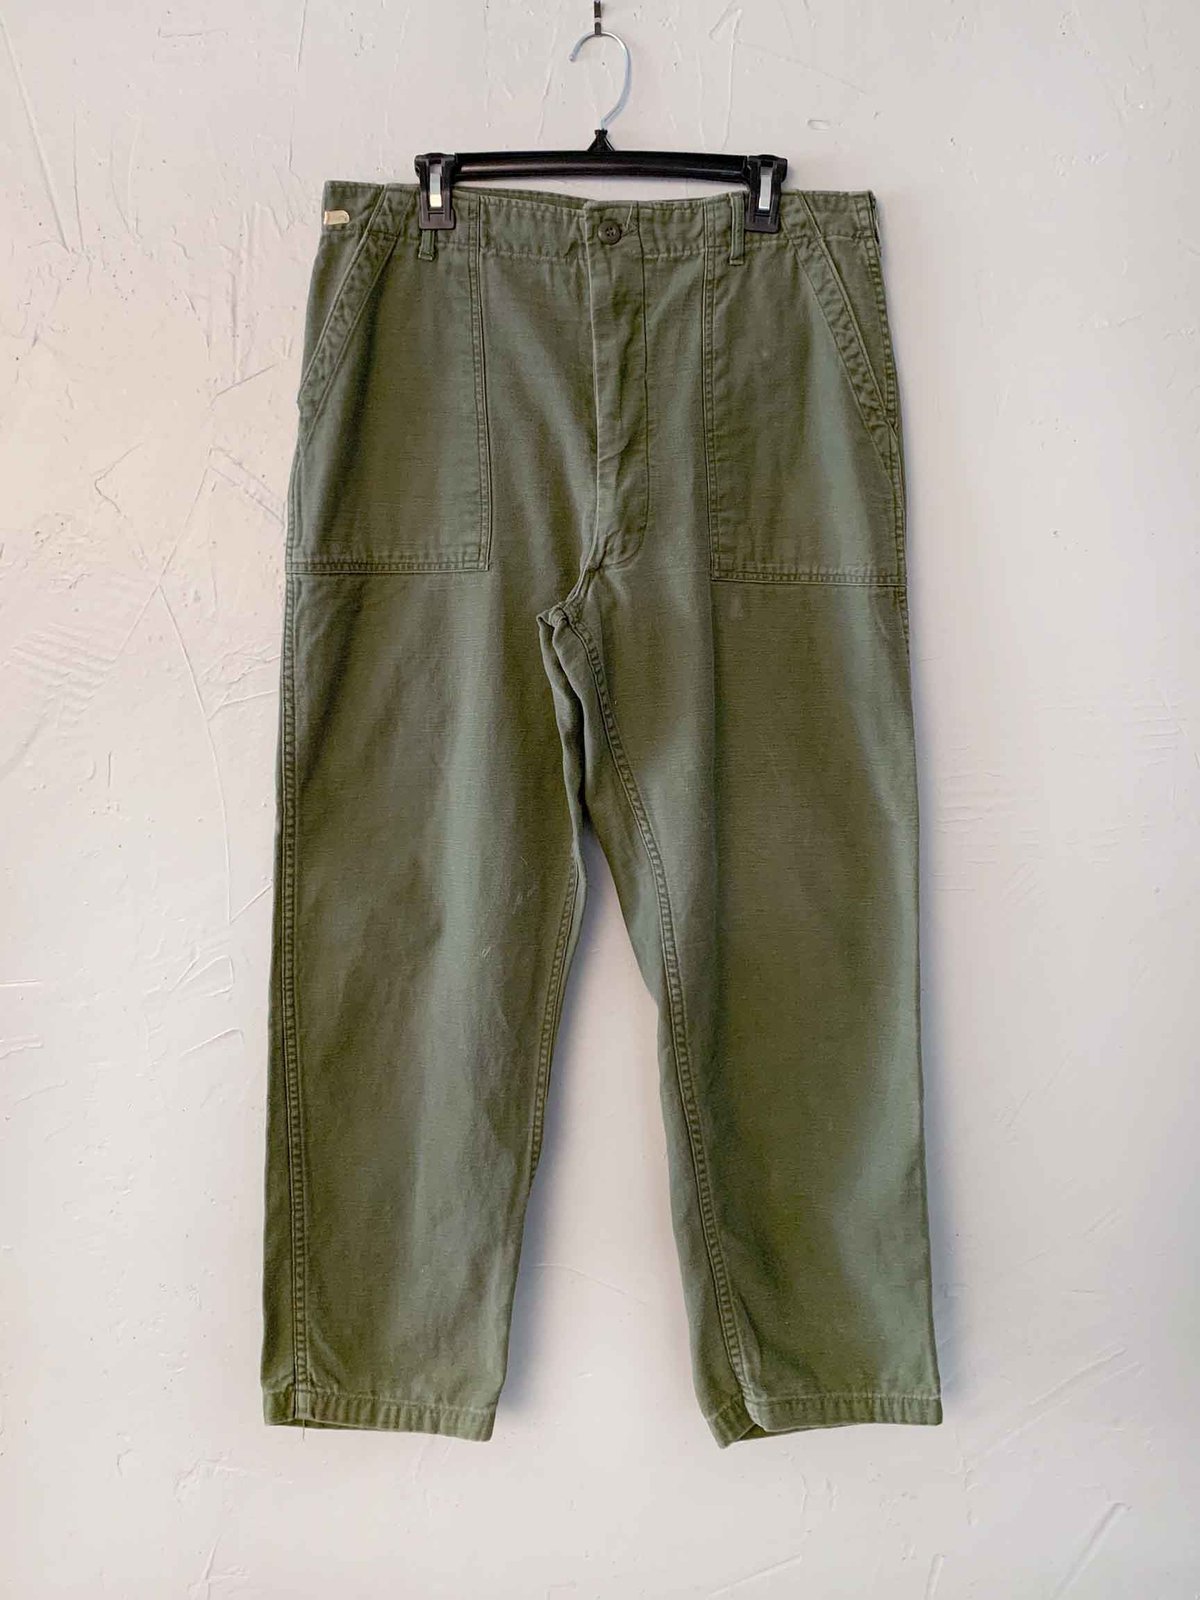 Vintage 1960s OG 107 Army Pants 28